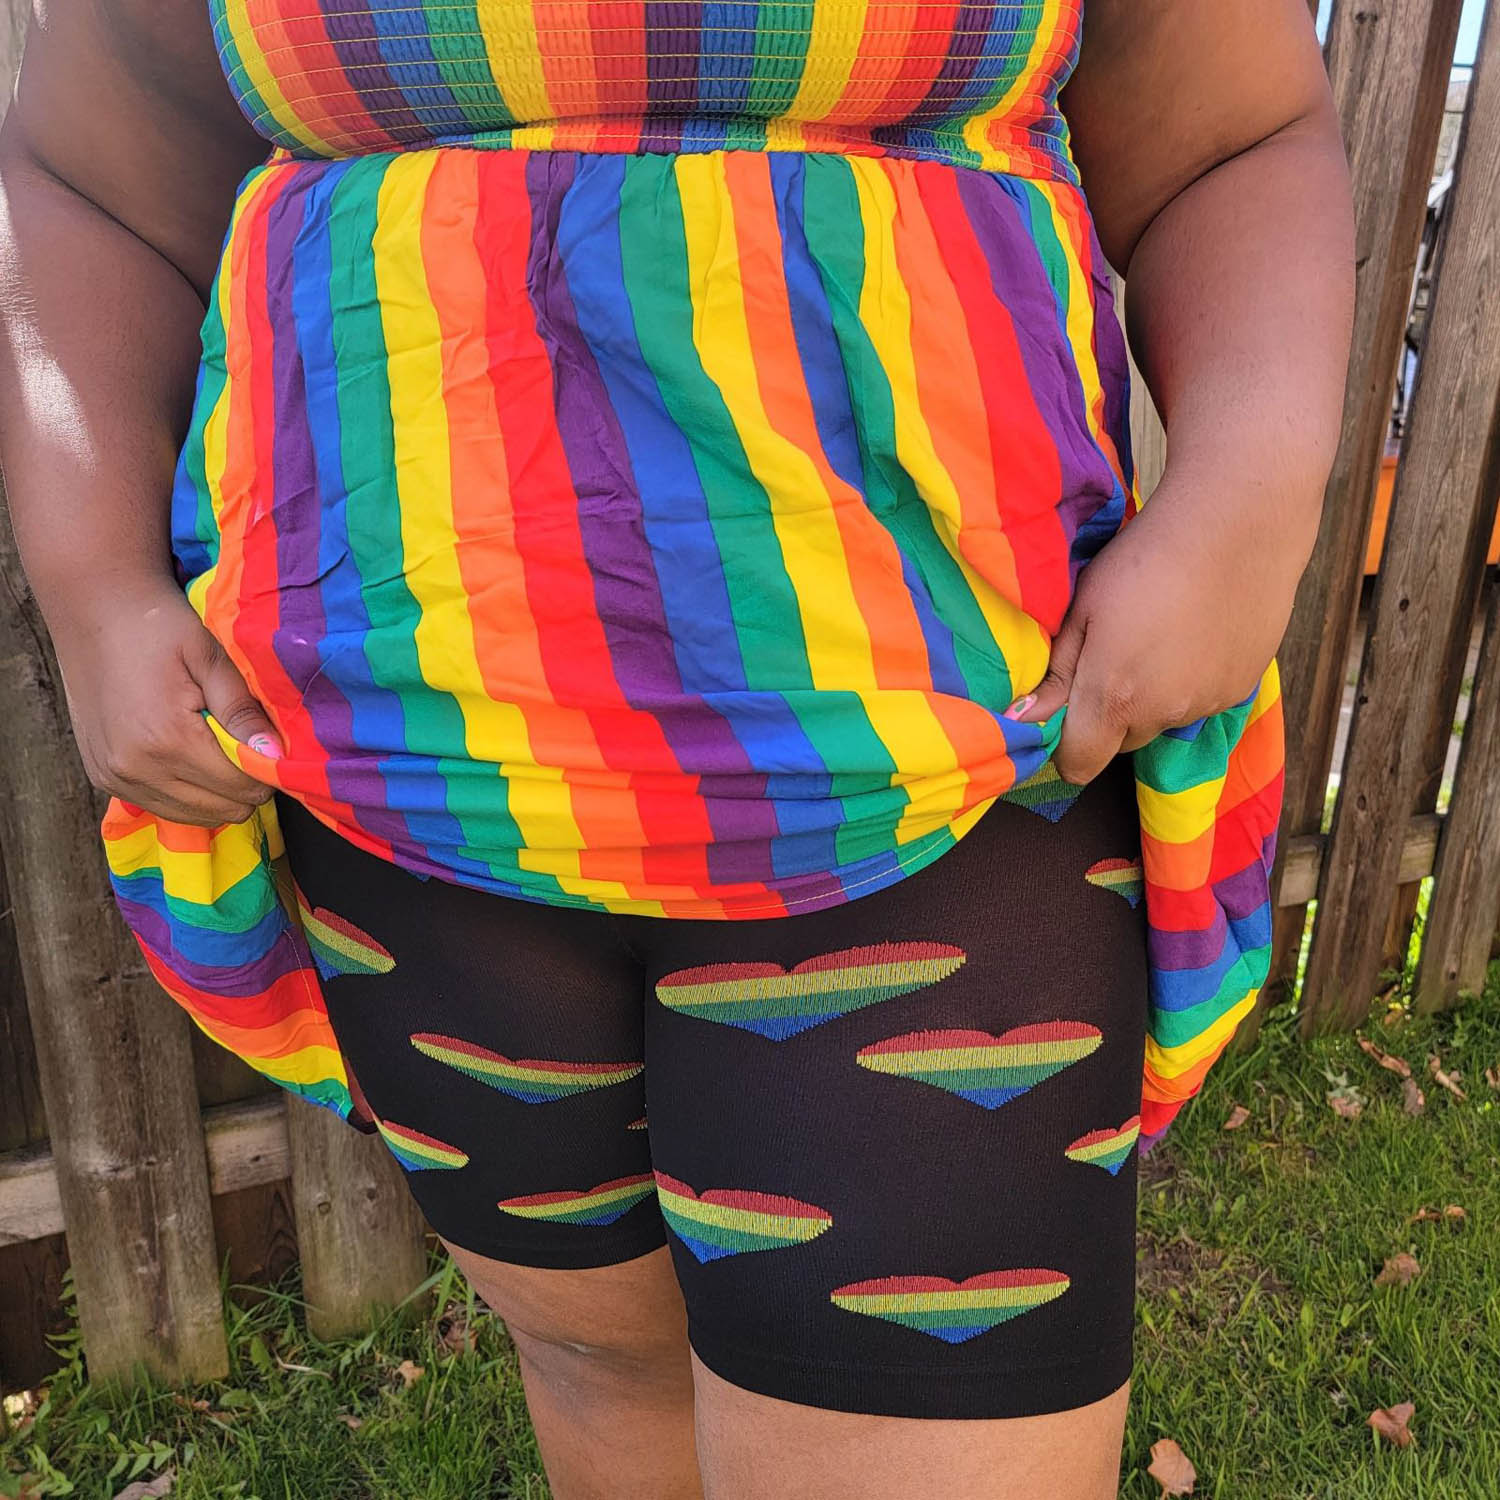 Stay Cool Chub Rub Shorts - Pride Love Is Love